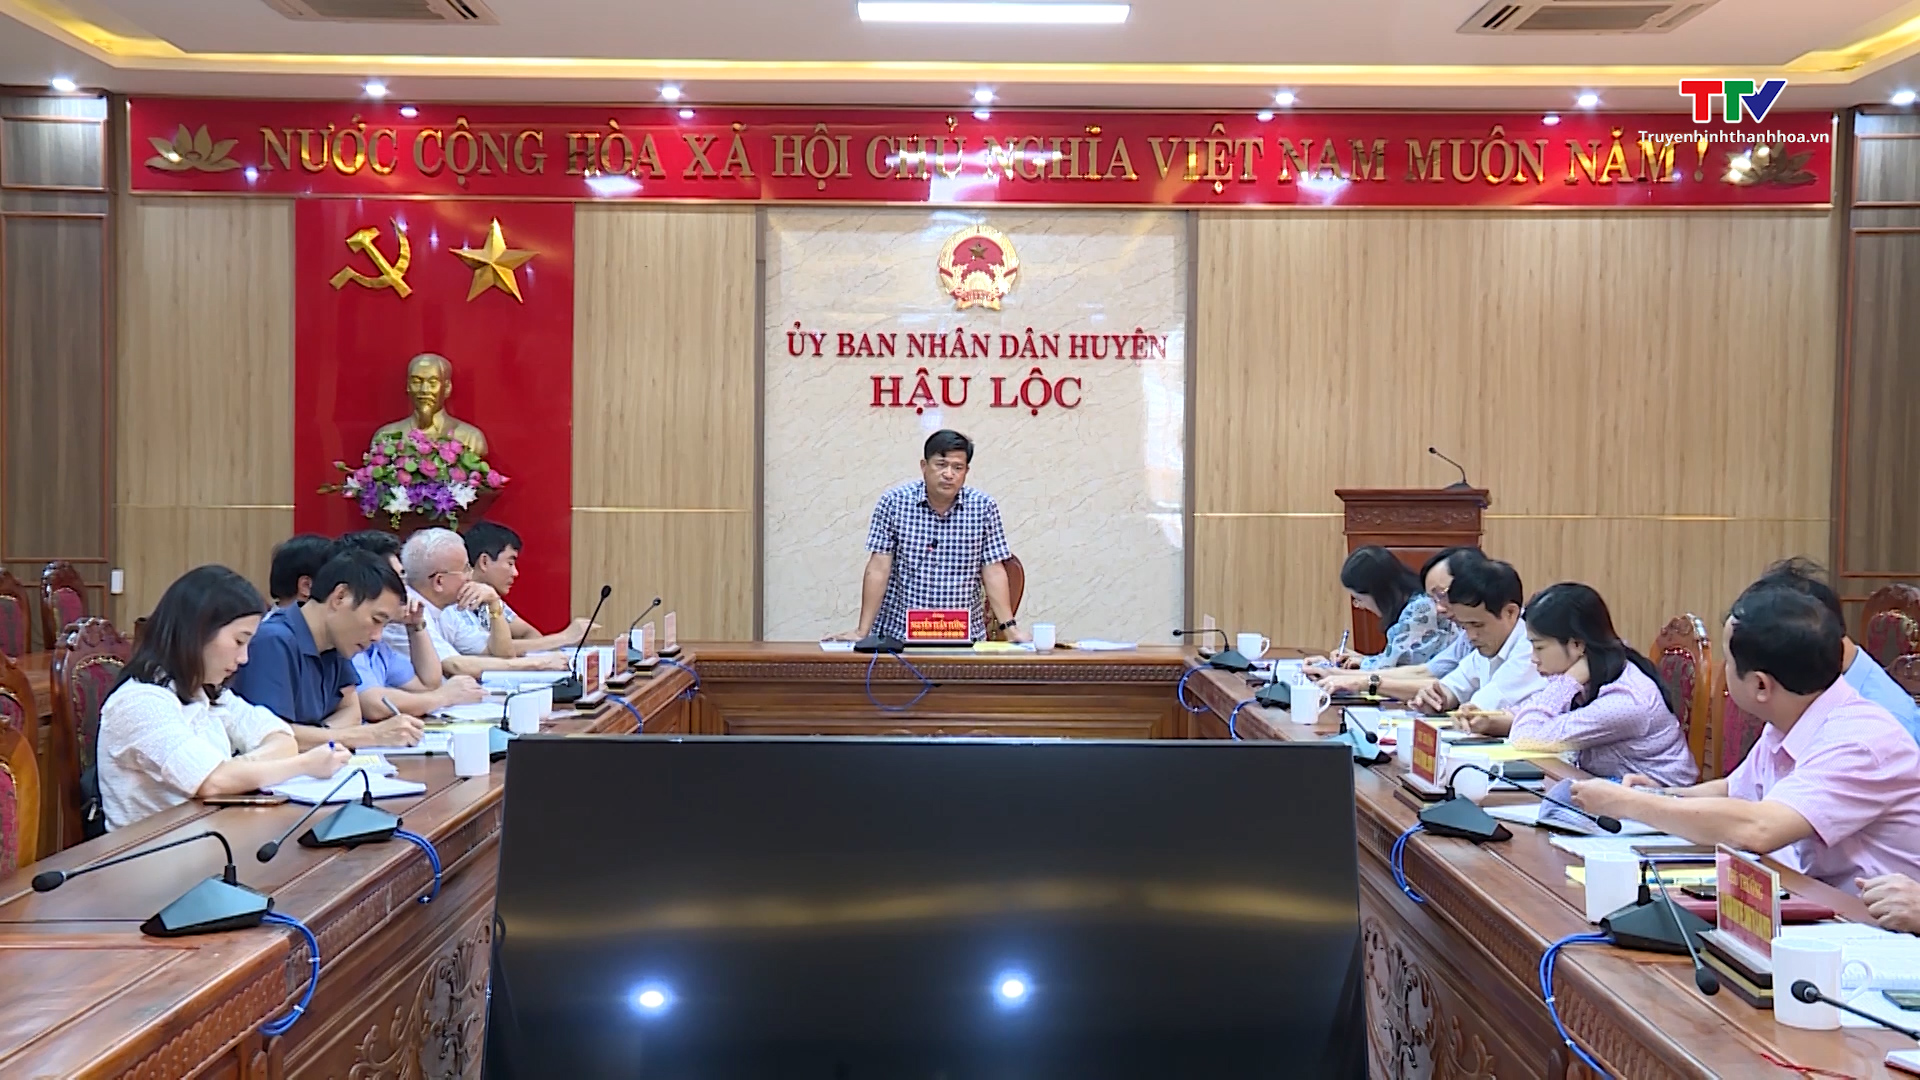 Phát huy hiệu quả tín dụng chính sách trên địa bàn huyện Hậu Lộc - Ảnh 4.